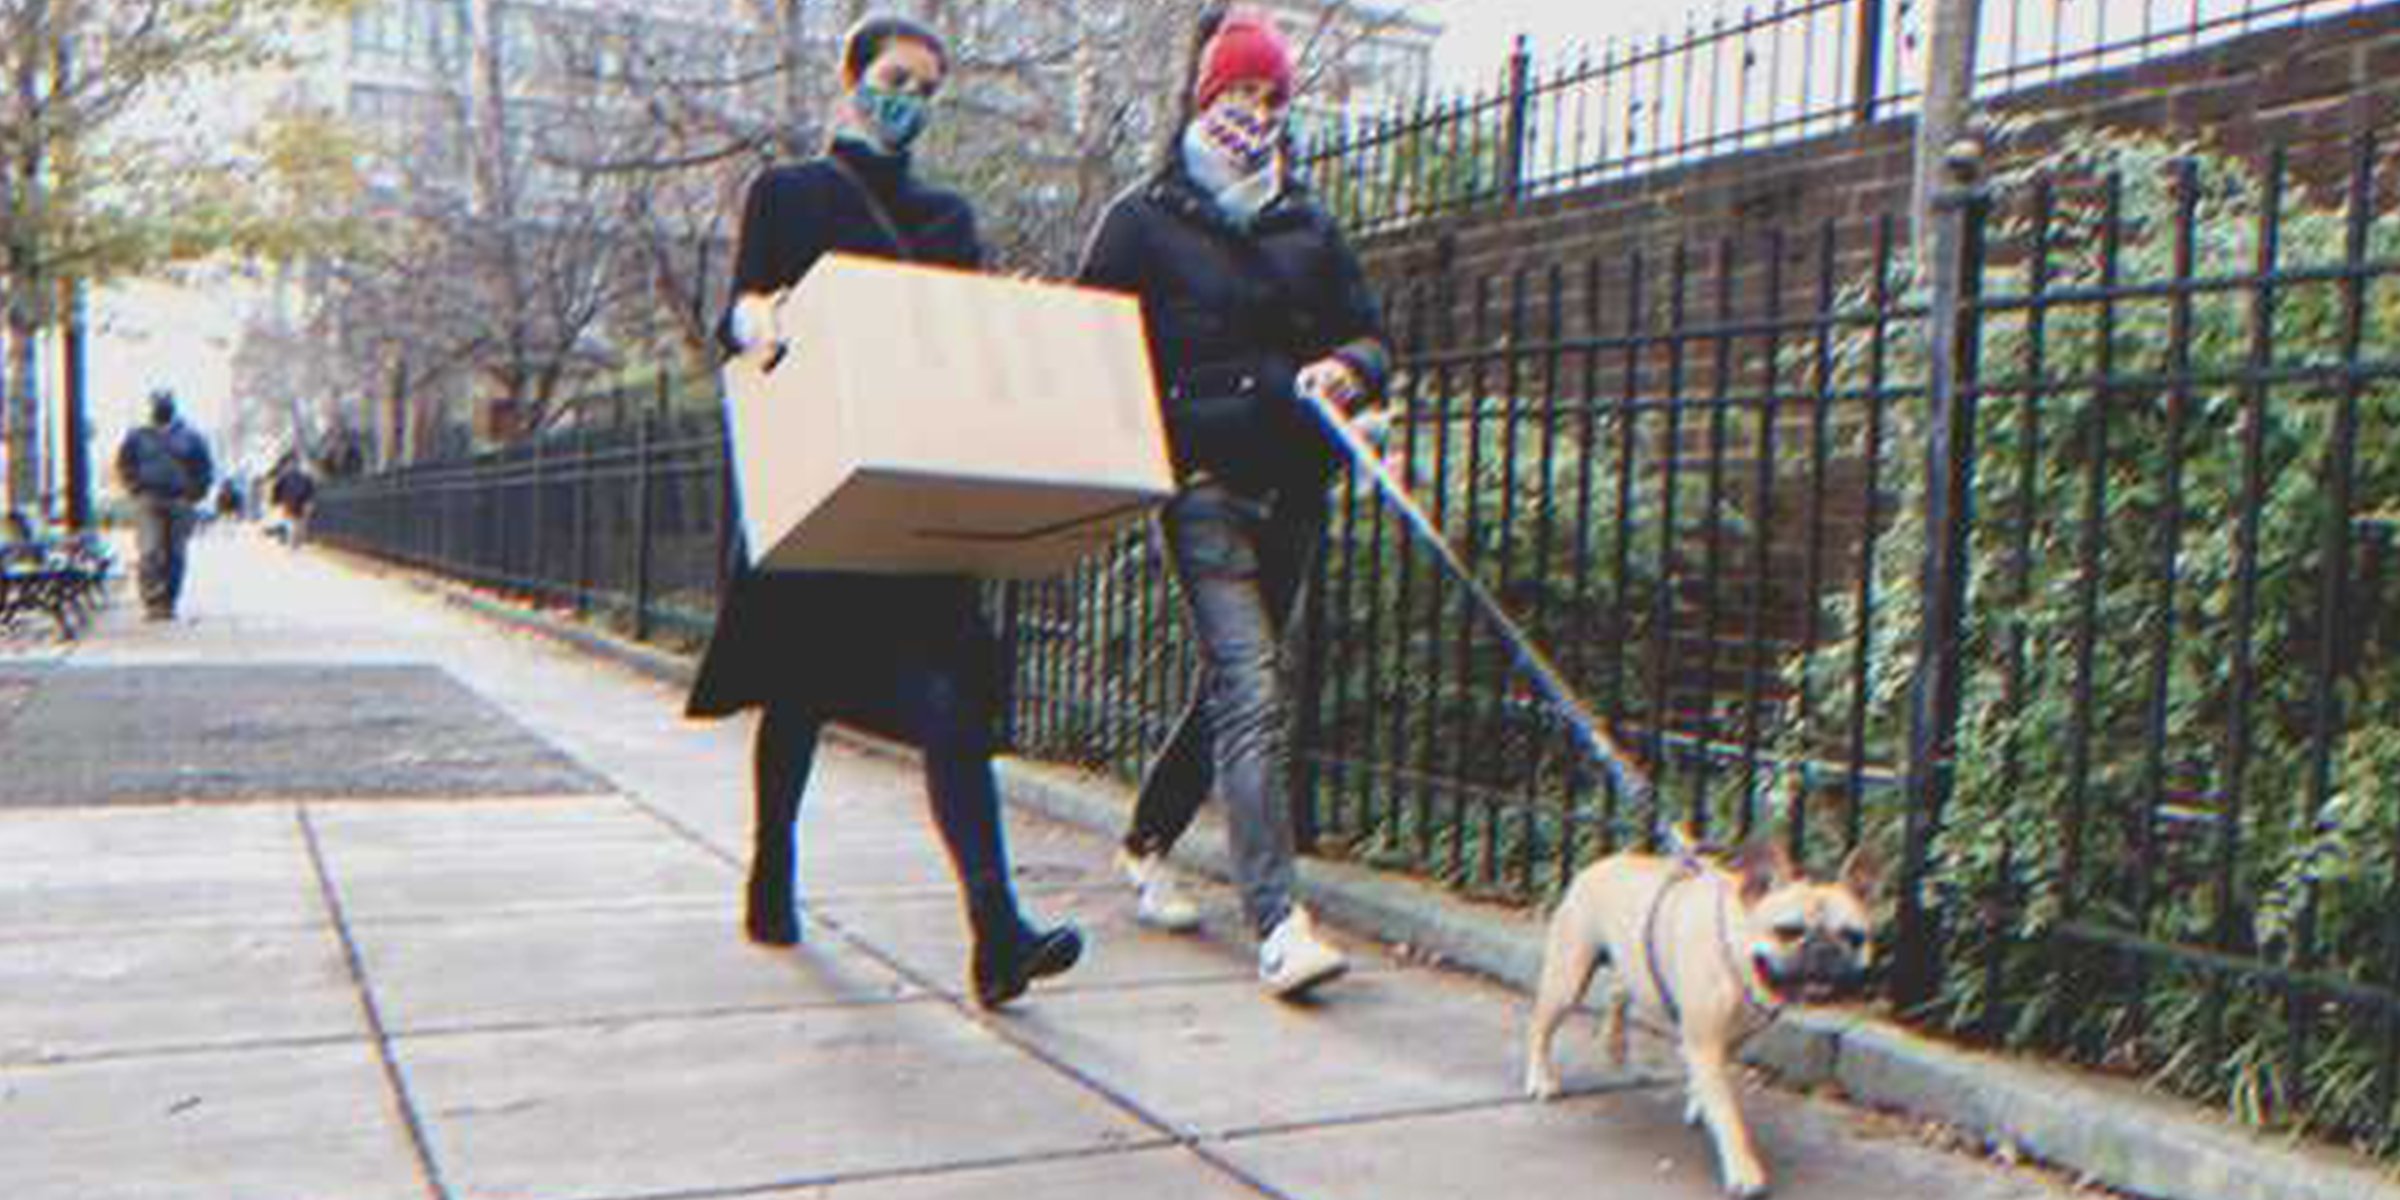 Frau trägt eine Kiste | Quelle: Shutterstock.com